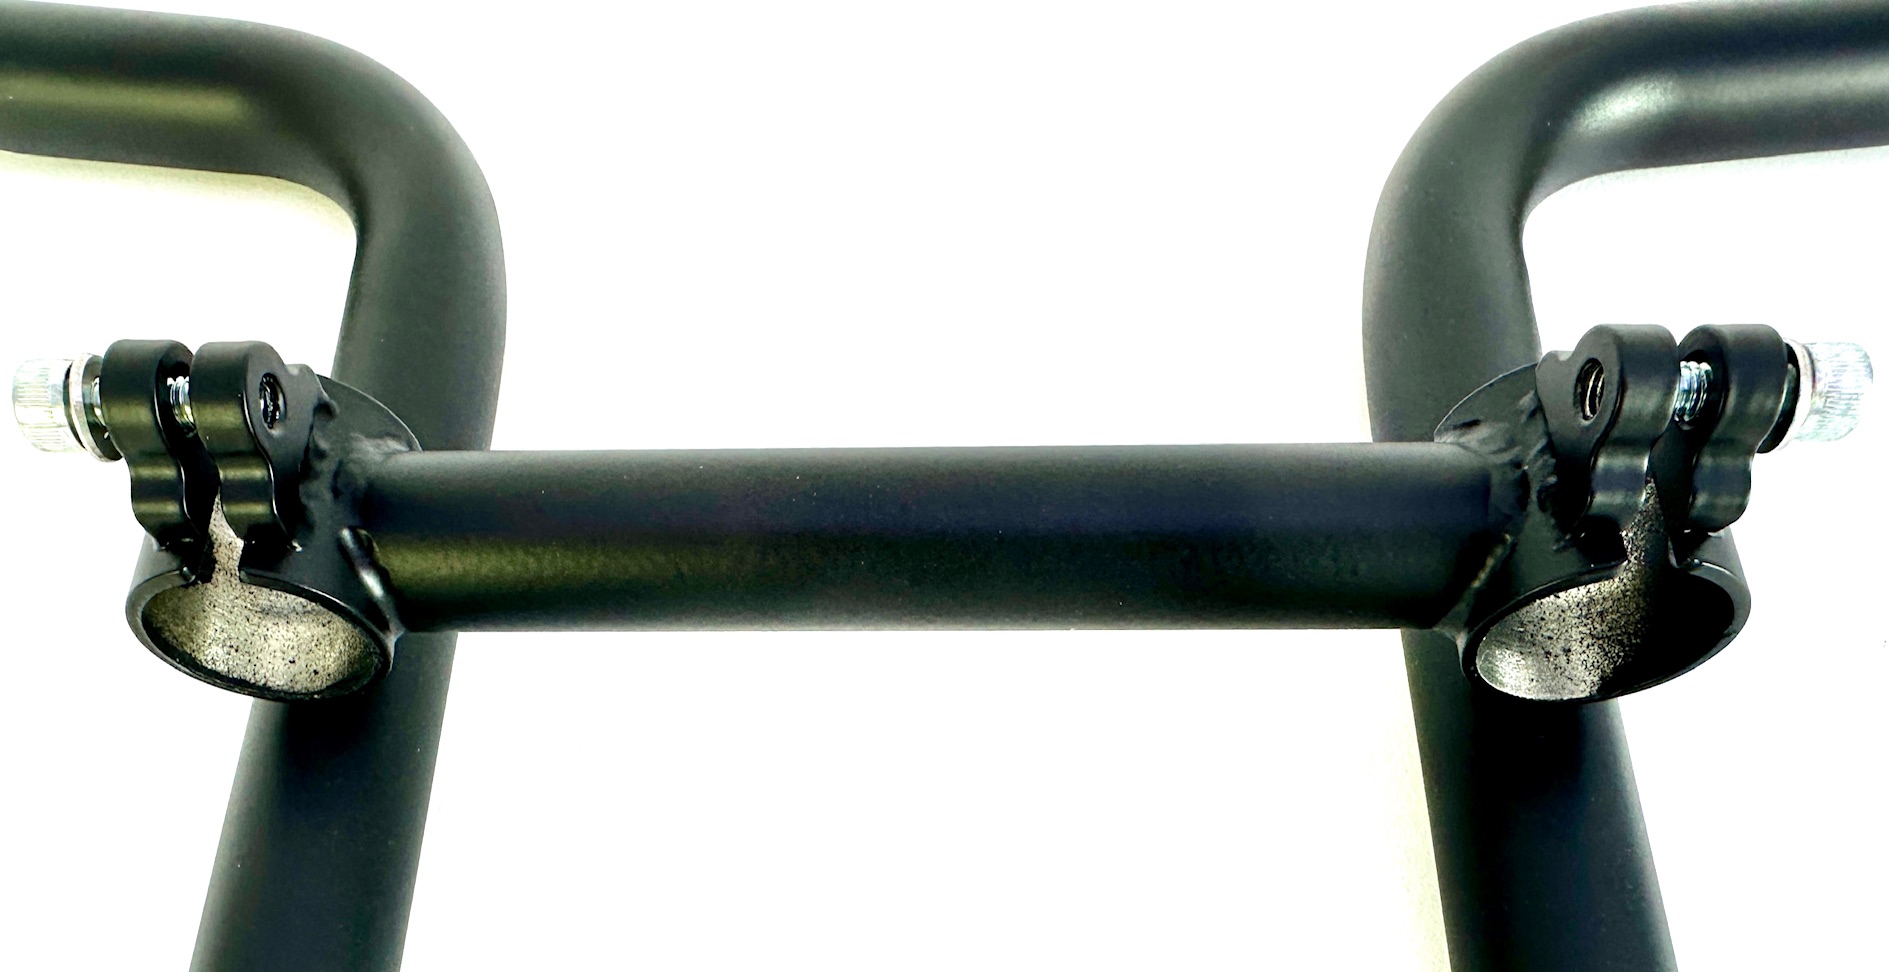 UD display holder for the Moke or Swing handlebar pair, matt black